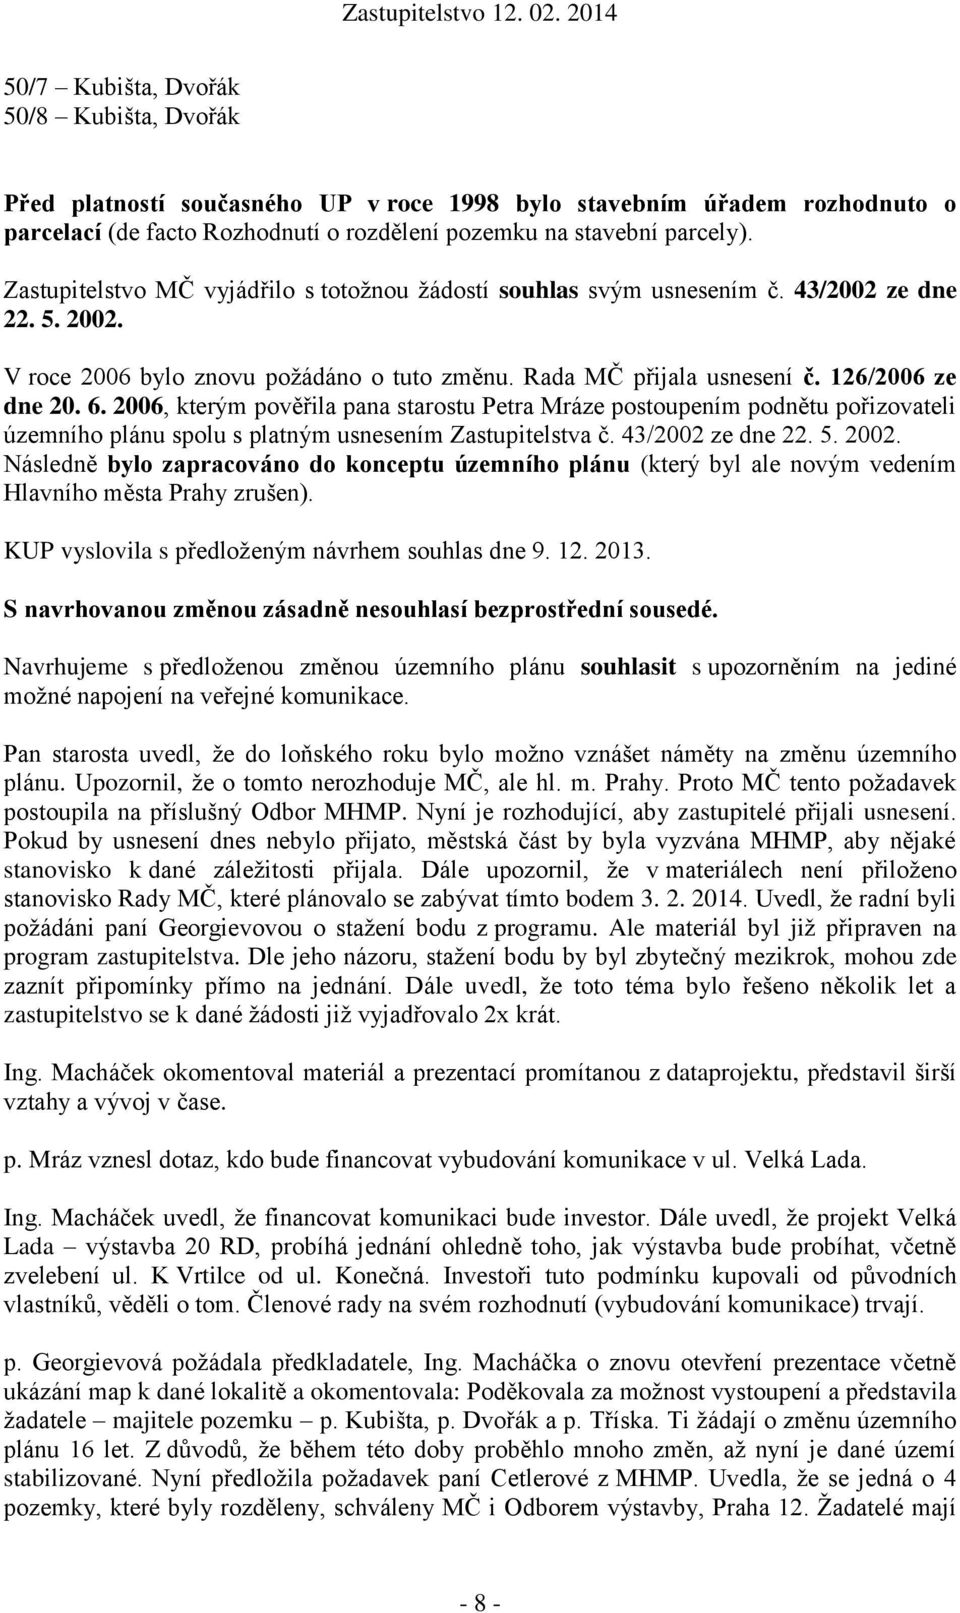 2006, kterým pověřila pana starostu Petra Mráze postoupením podnětu pořizovateli územního plánu spolu s platným usnesením Zastupitelstva č. 43/2002 ze dne 22. 5. 2002.